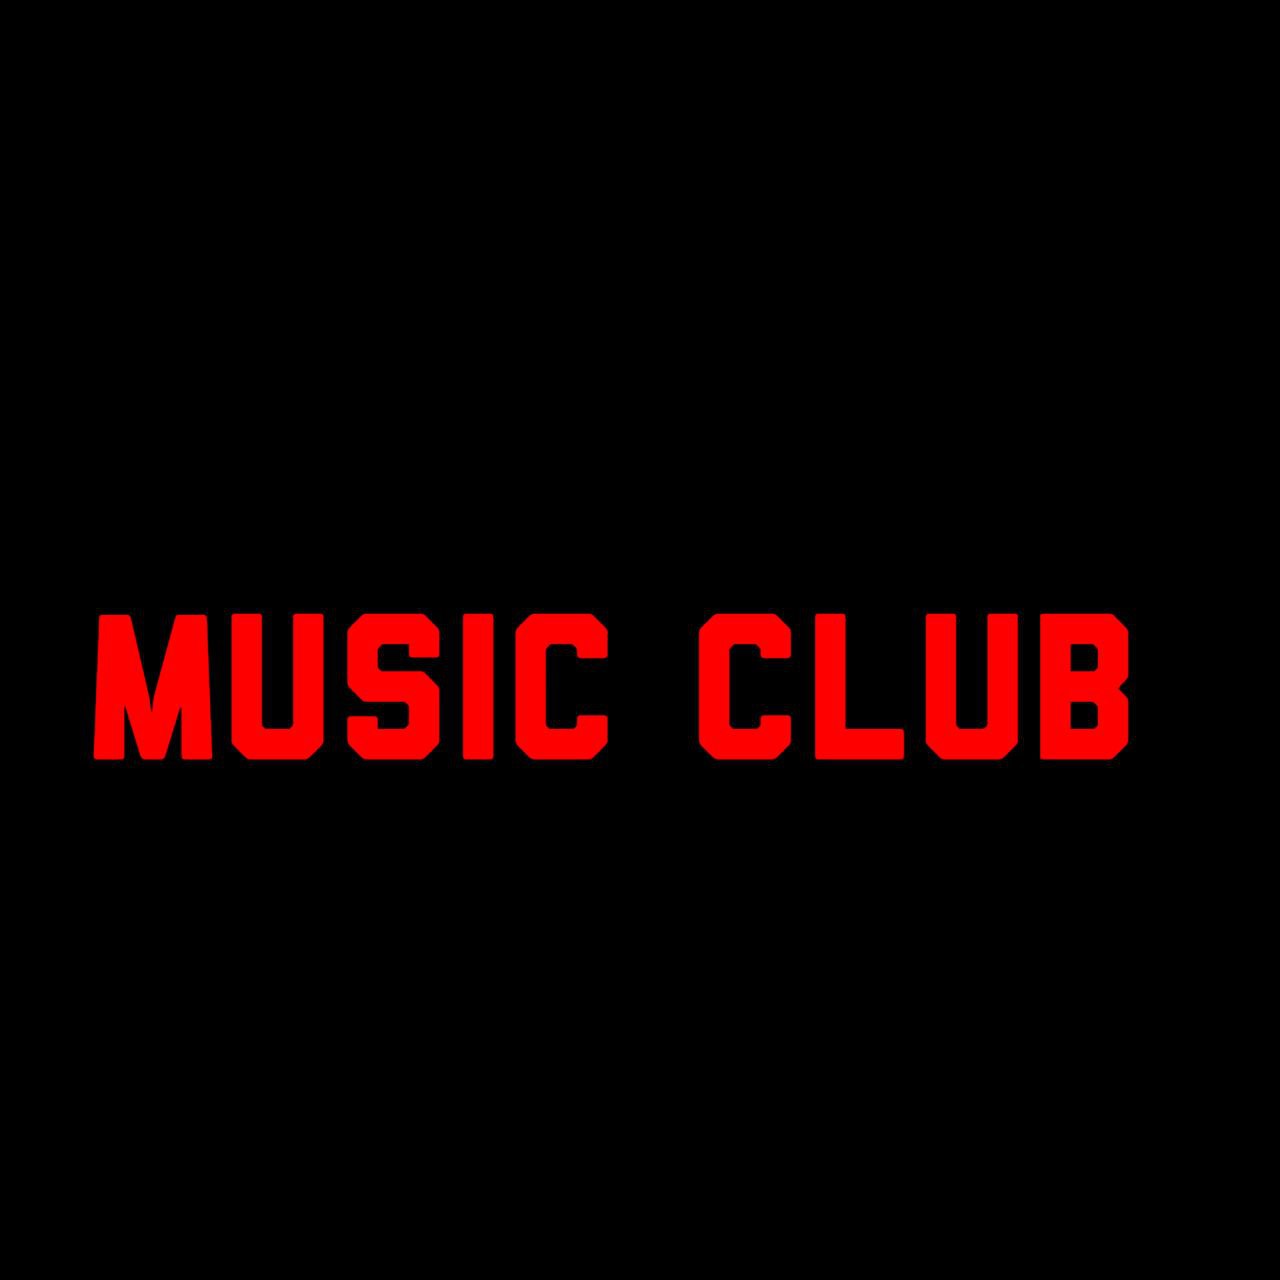 Music club - хорошая песня